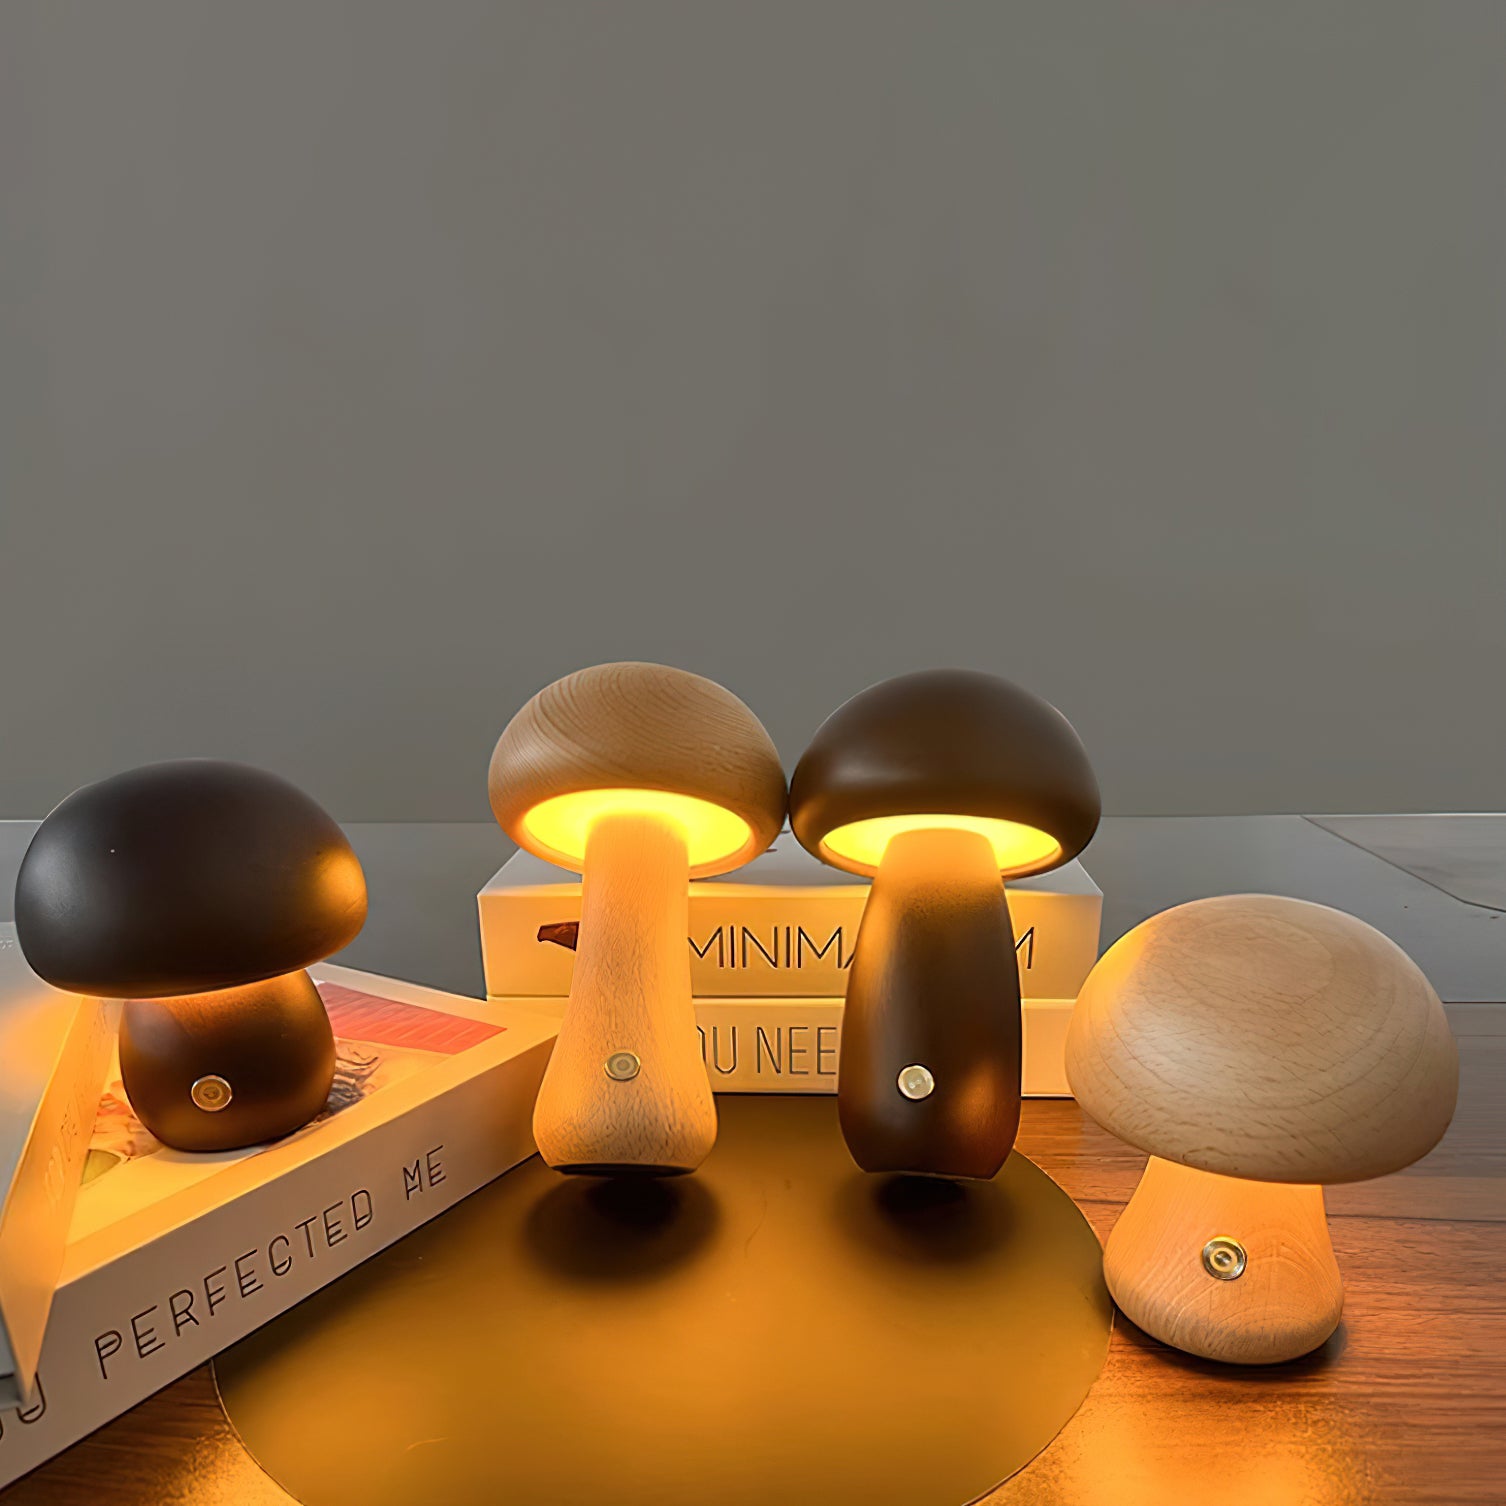 Mini Mushroom Table Lamp